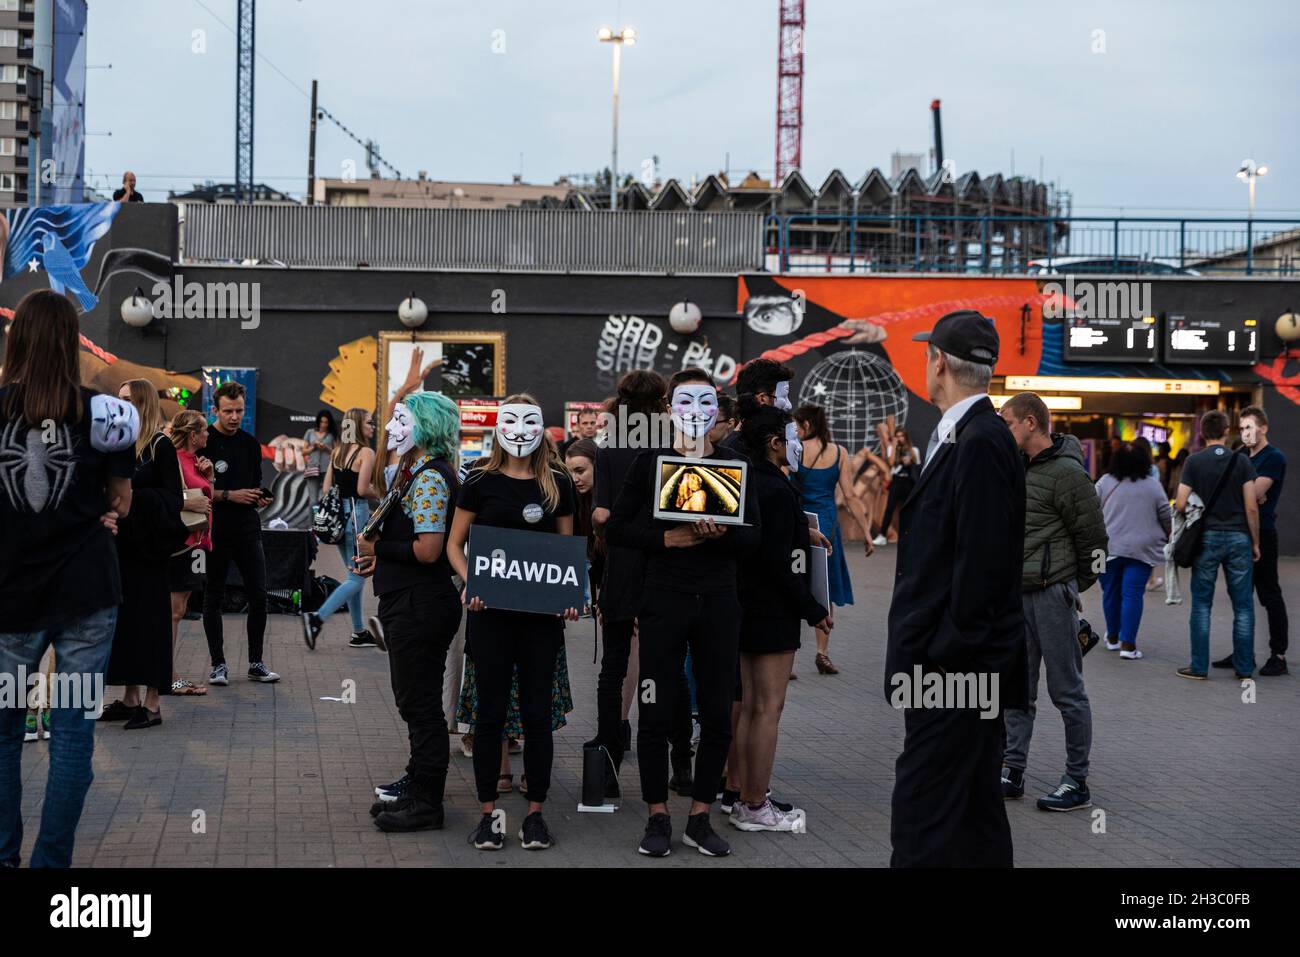 Varsovie, Pologne - 2 septembre 2018: Des individus apparaissant en public comme anonymes, portant des masques Guy Fawkes signalant des abus d'animaux à Varsovie, Pologne Banque D'Images